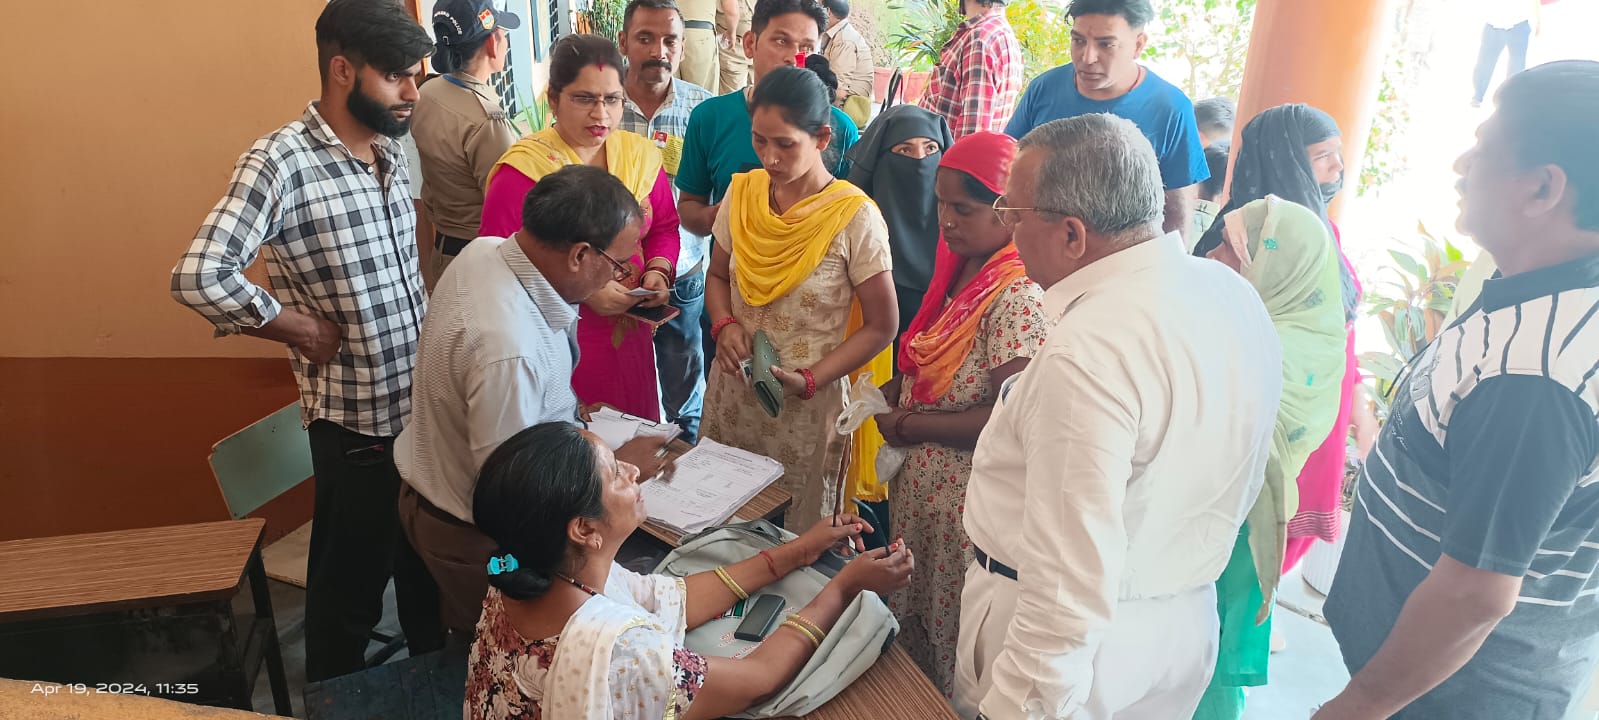 काशीपुर: निर्वाचक गणना कार्ड में नाम अंकित, लिस्ट में आया डिलीट, वोटरों ने की शिकायत